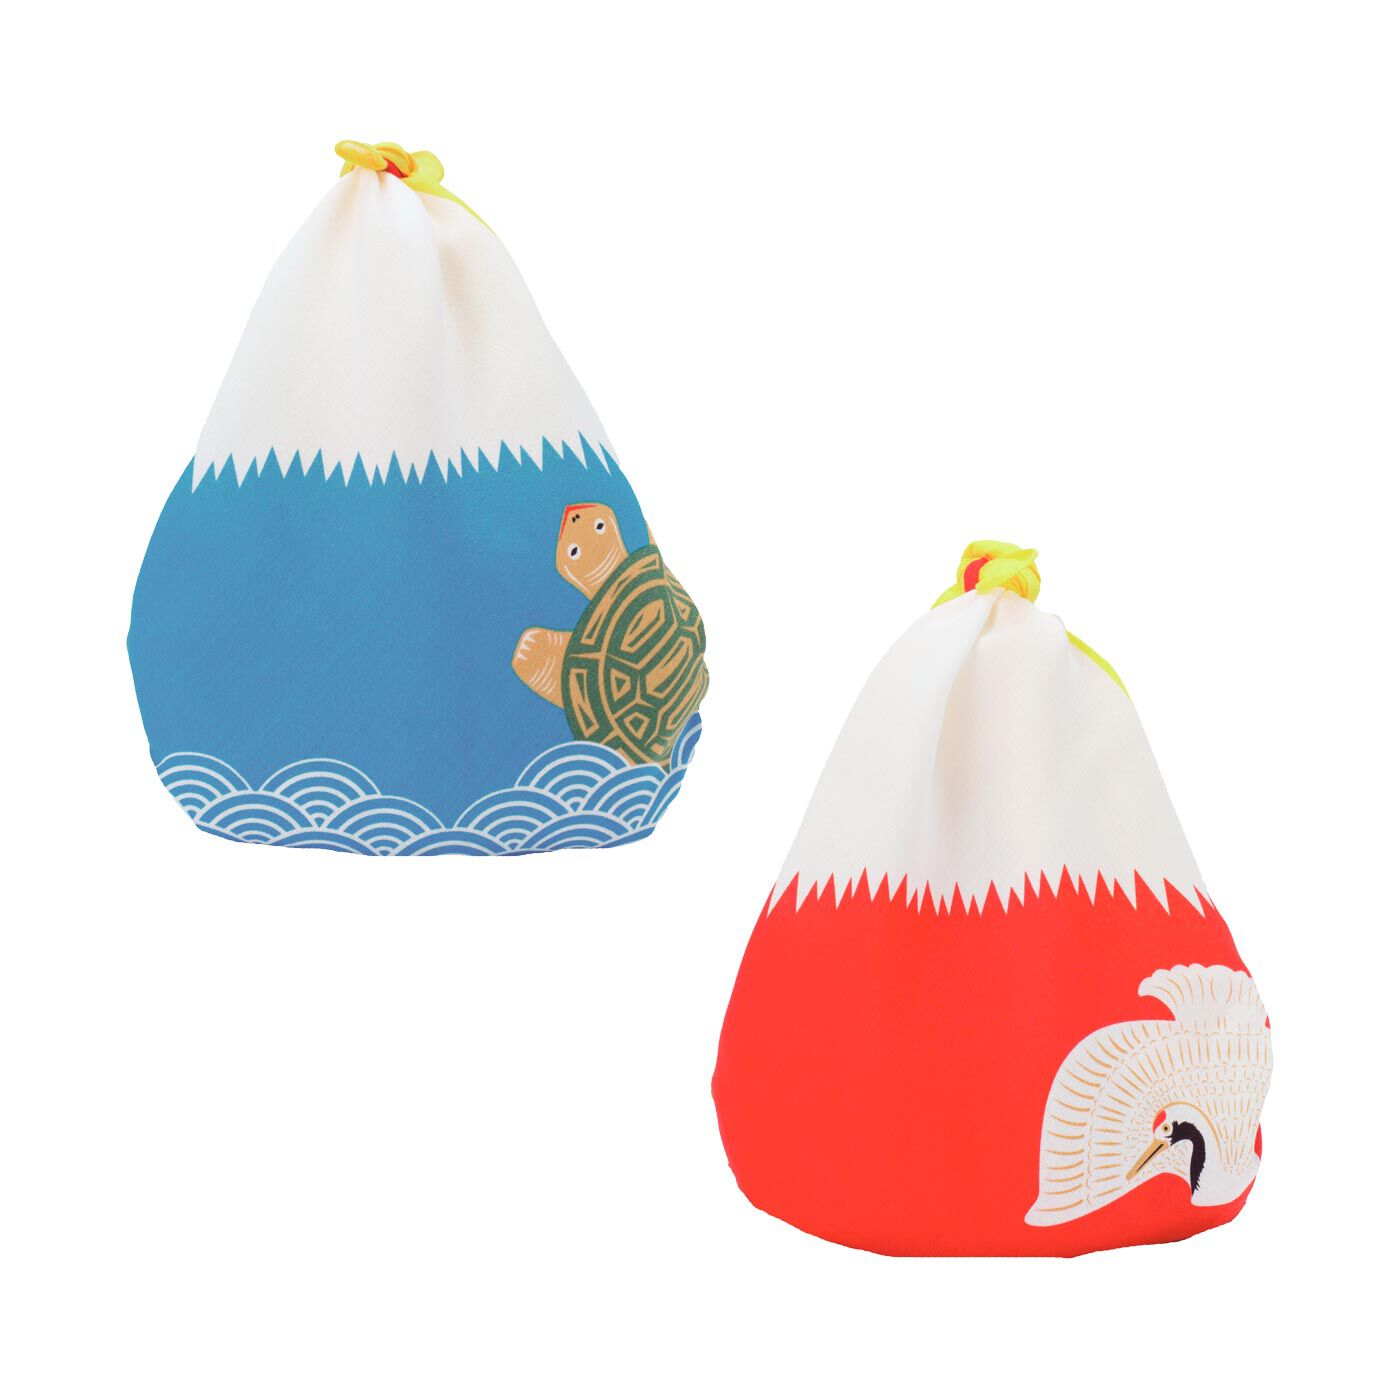 フェリシモの雑貨 Kraso|【6月分以降お届け】【福コチャエ】包んで完成する小さな開運風呂敷の会|ちびバッグみたいにして使えます。